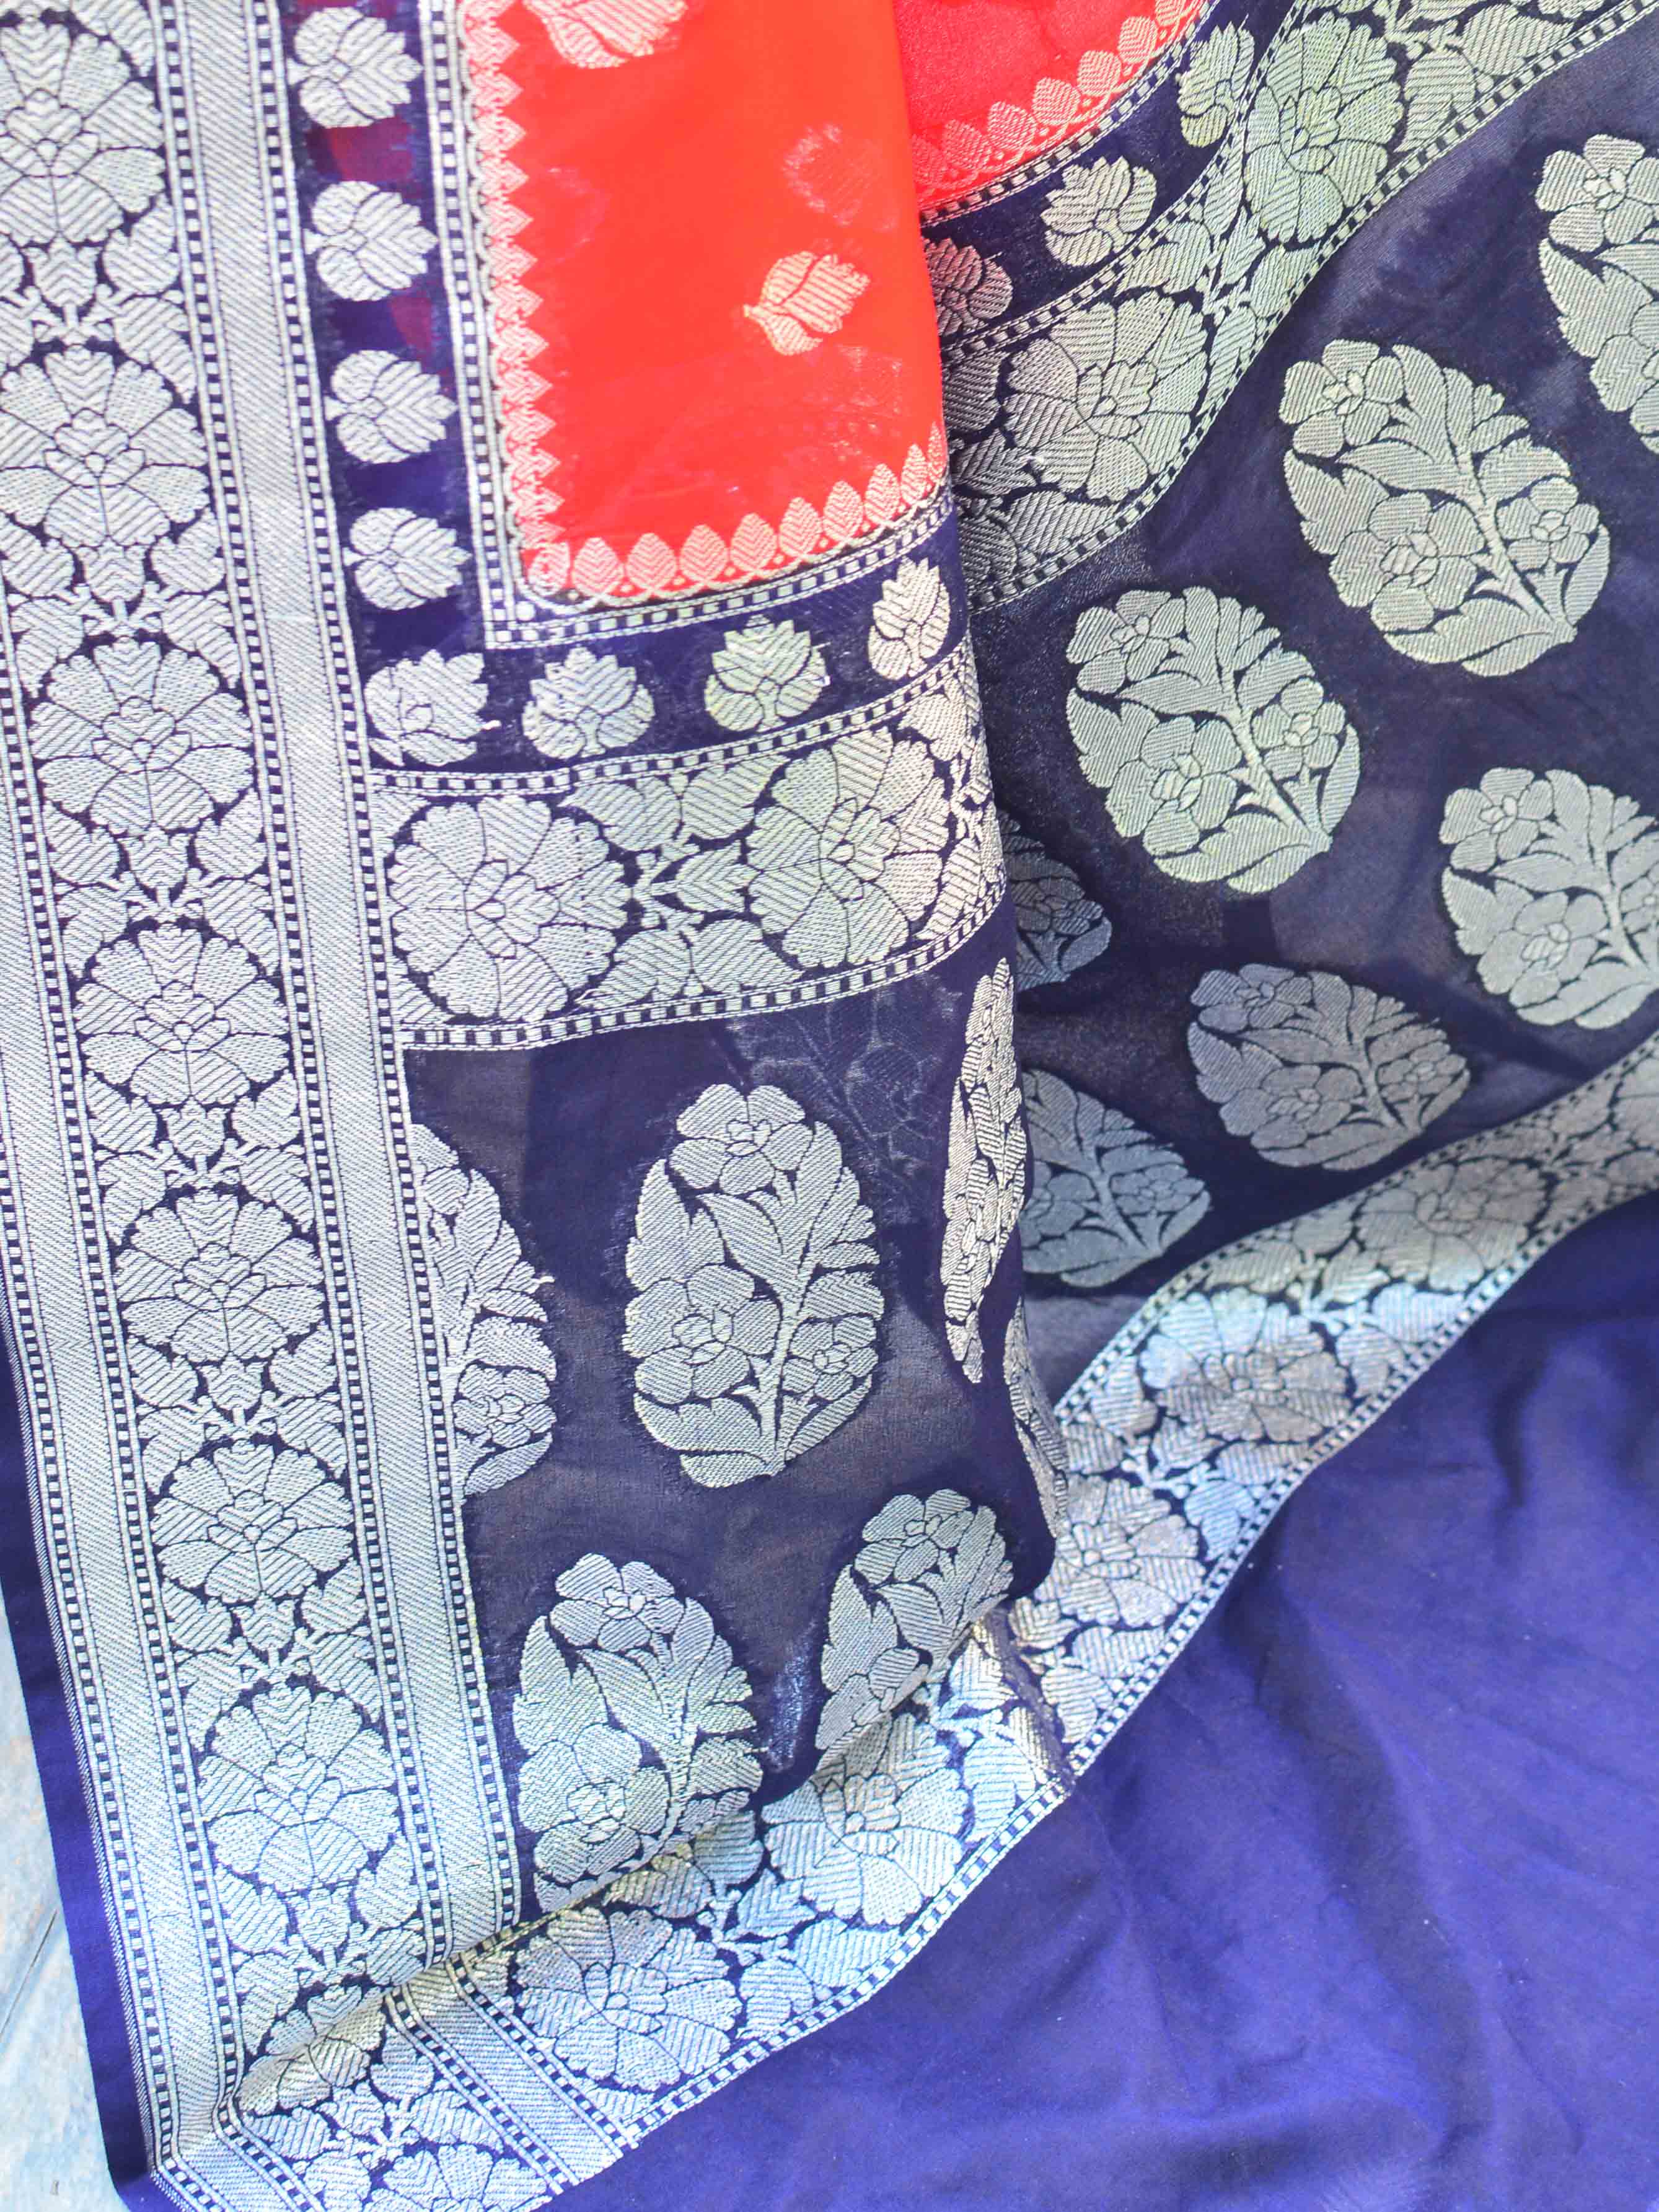 Banarasee Handwoven Faux Georgette Saree With Silver Zari Buti & Contrast Border Design-Red